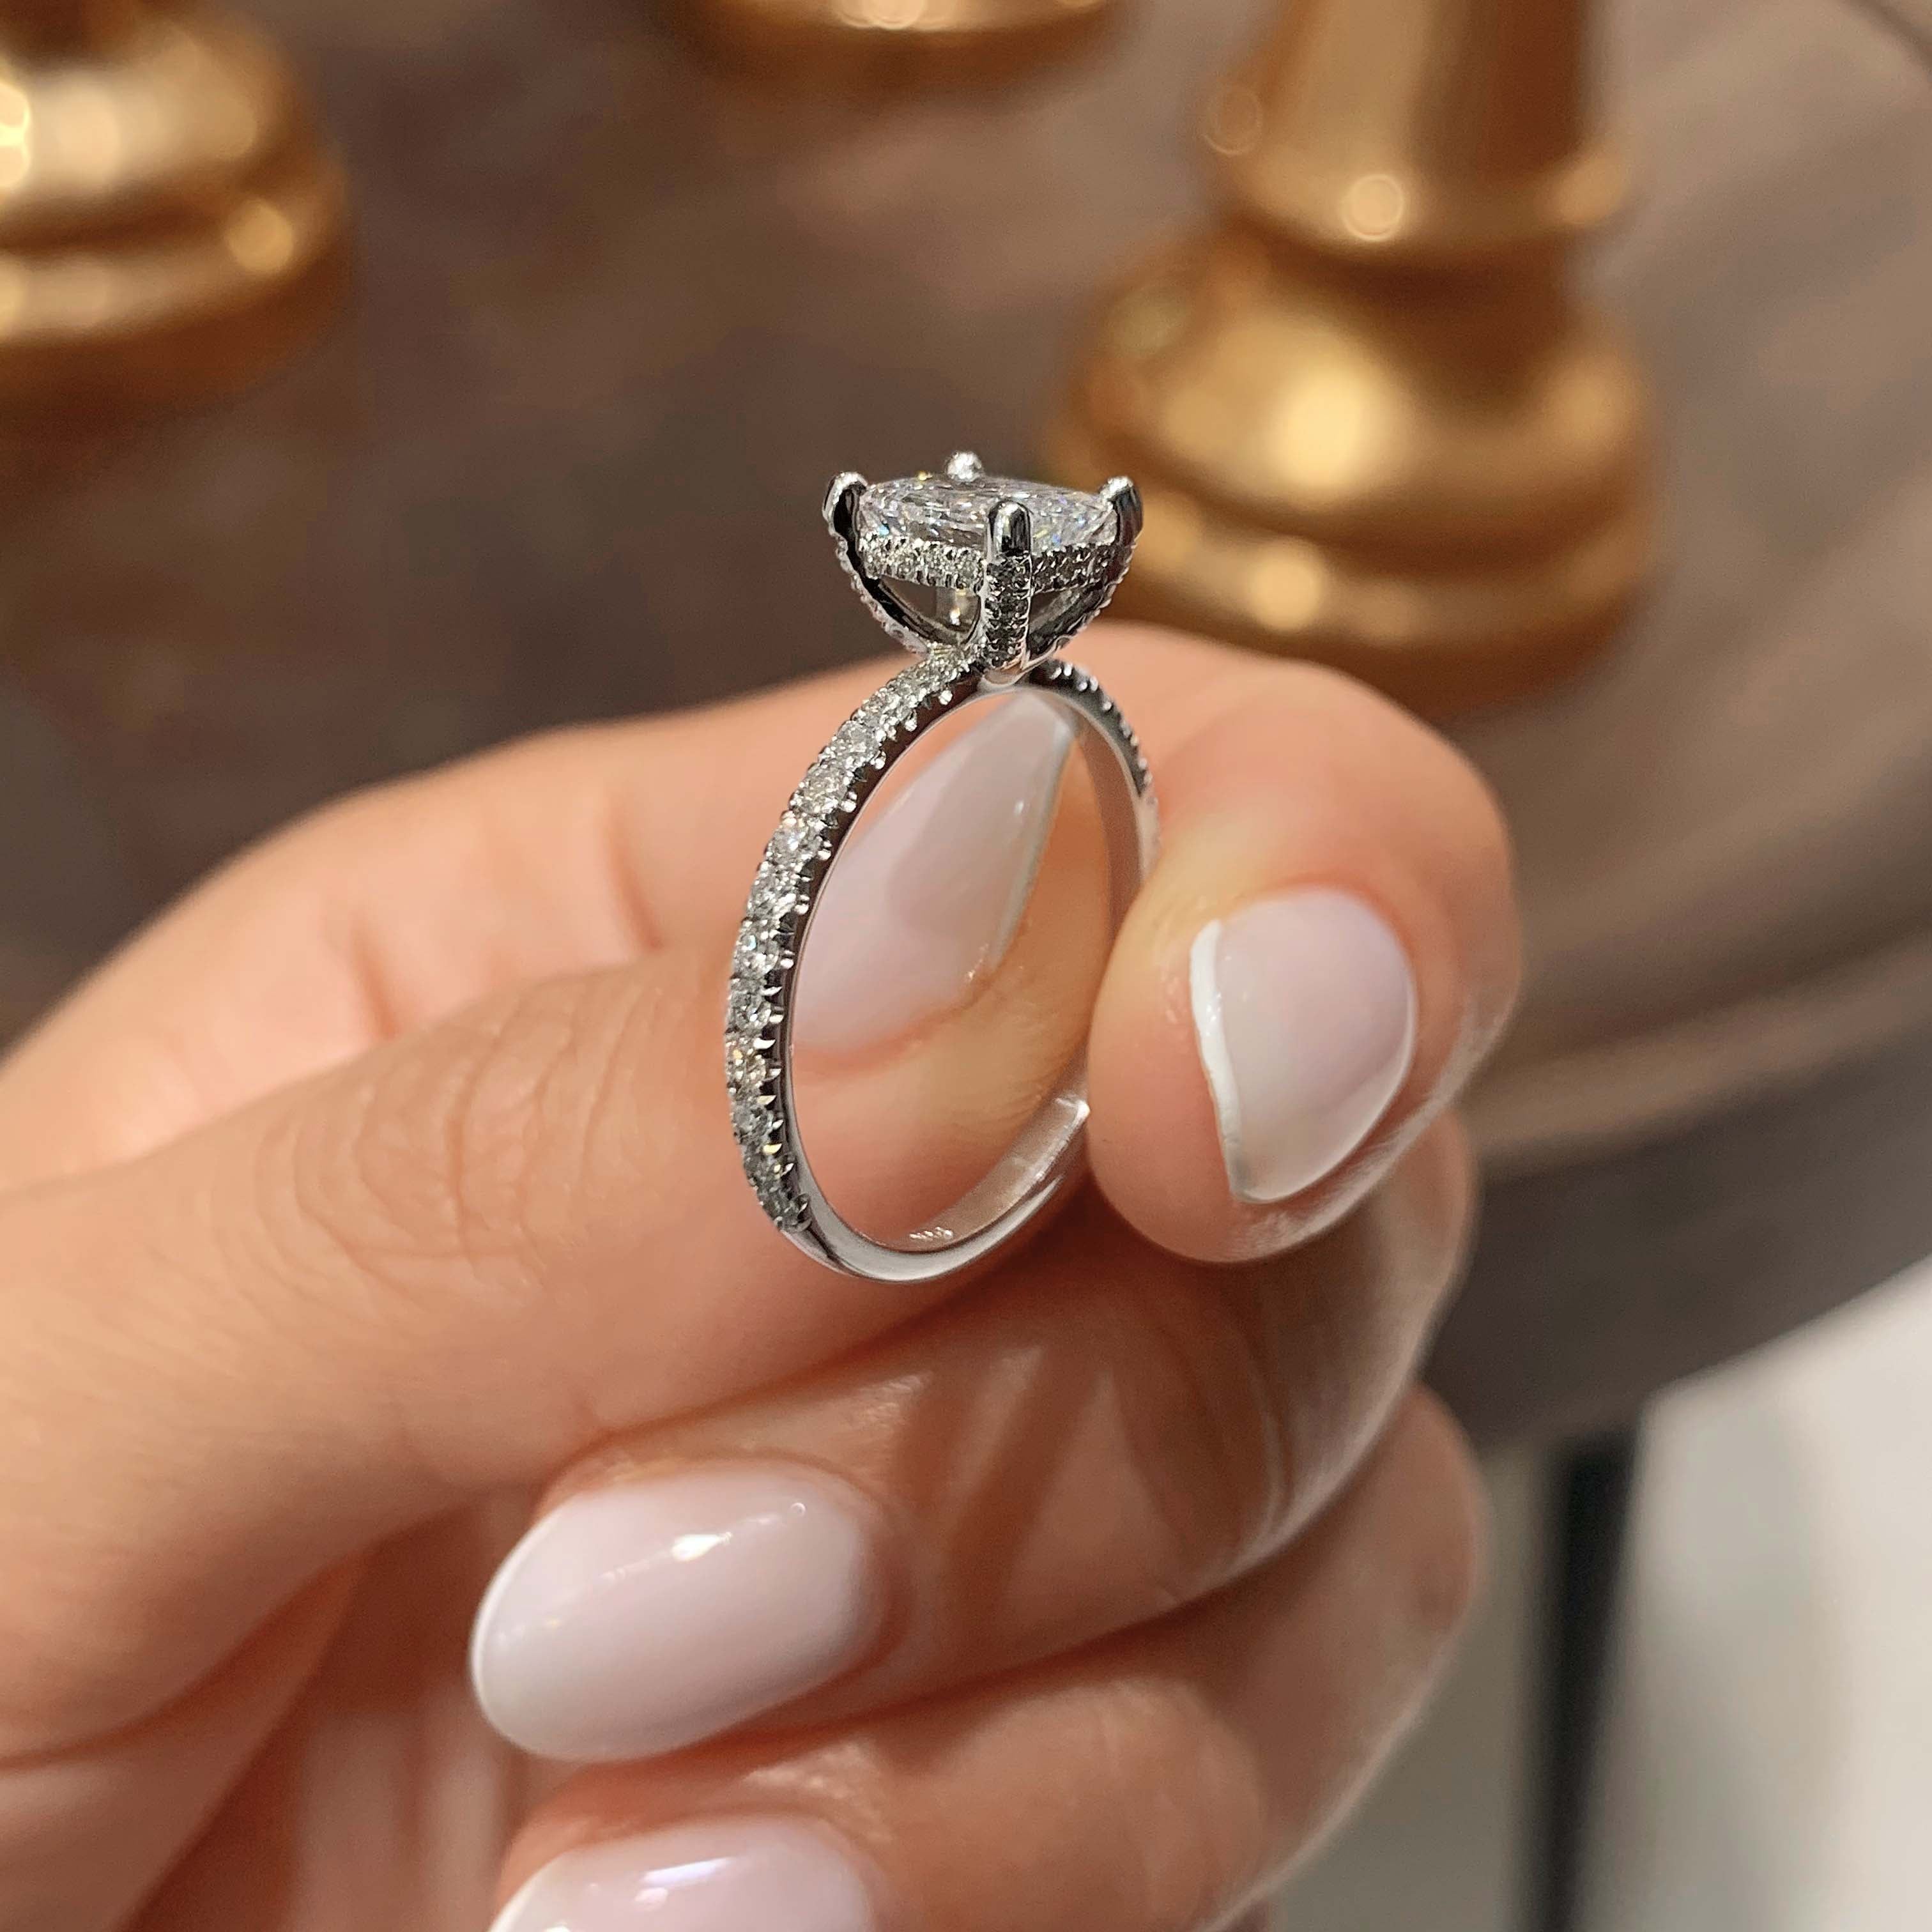 Deborah Diamond Engagement Ring   (1.50 Carat) -18K White Gold